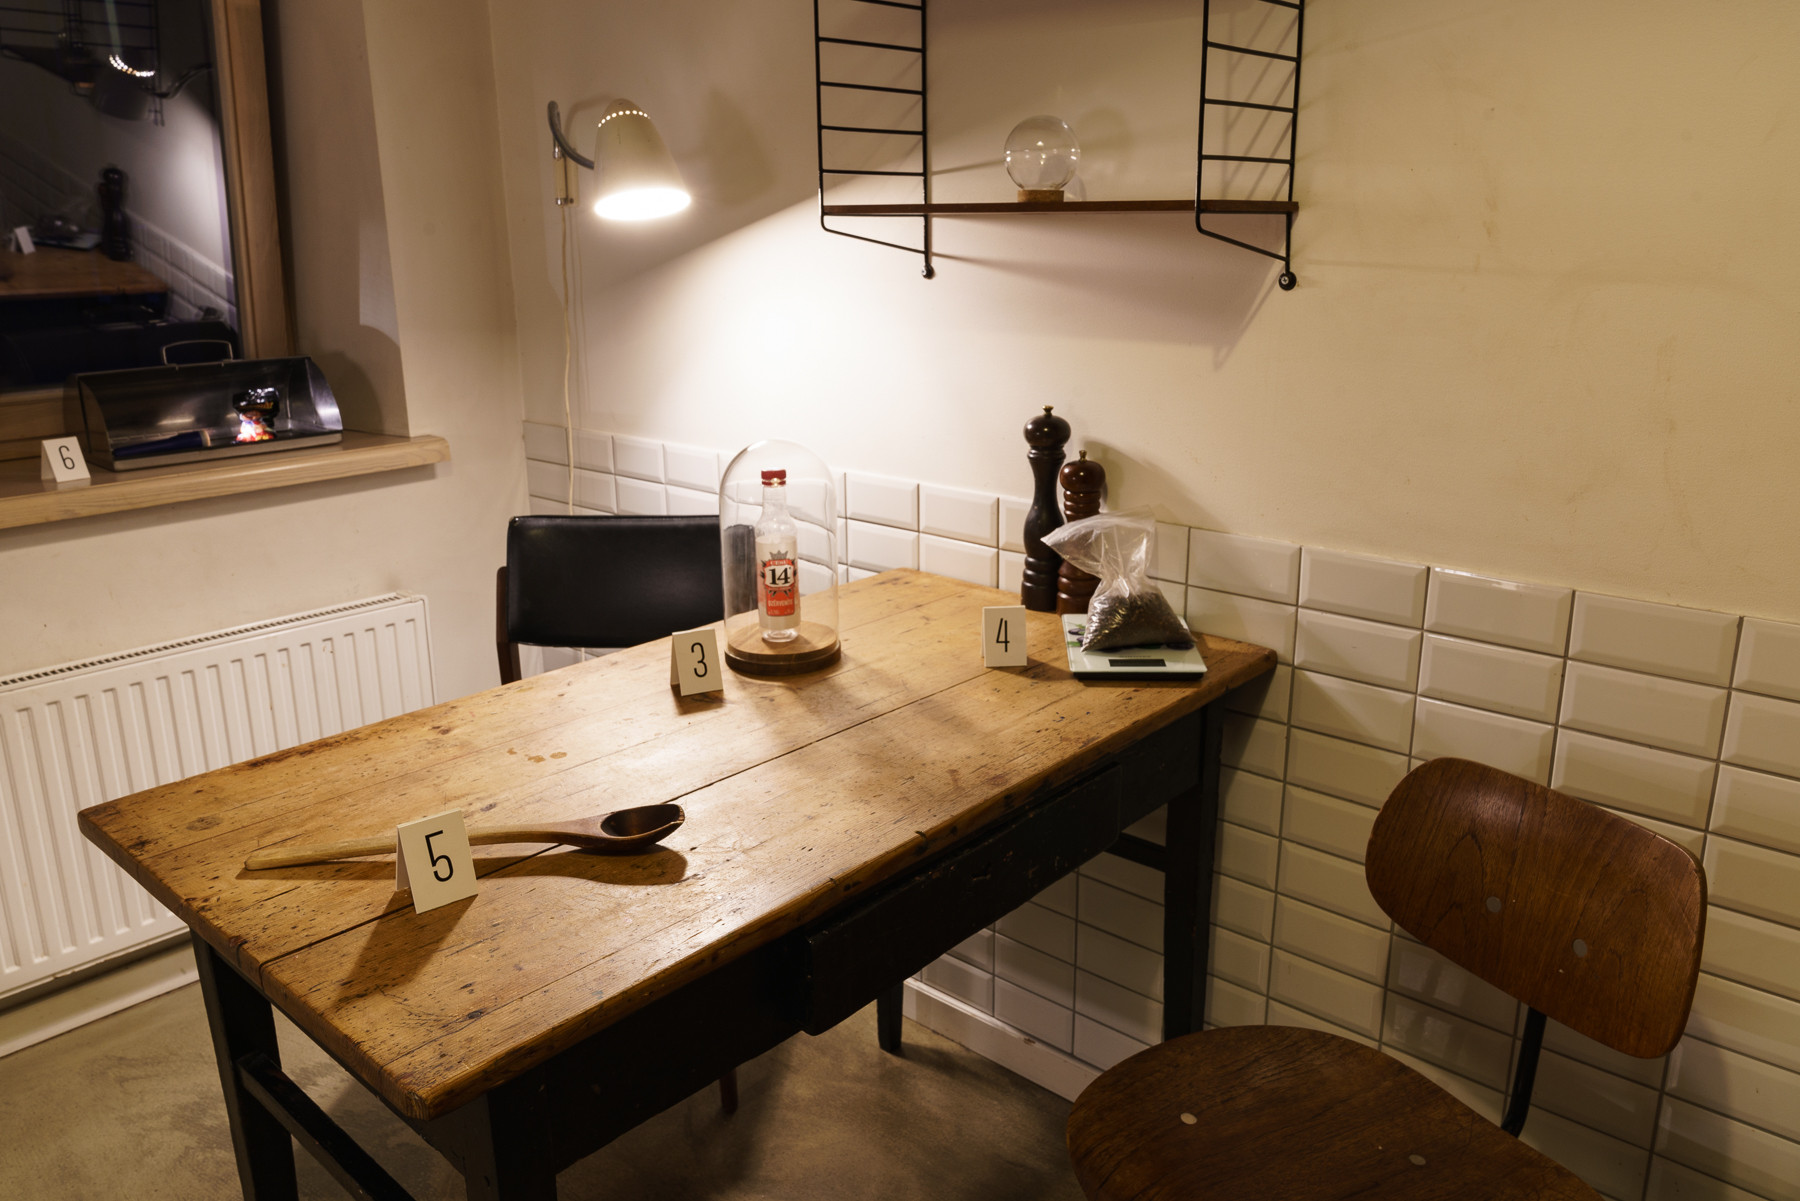 Das Bild zeigt eine Küche mit einem Holztisch und zwei Stühlen. Auf dem Tisch befinden sich ein Kochlöffel und zwei Pfeffermühlen, die je ein Schild mit einer Nummer drauf haben.